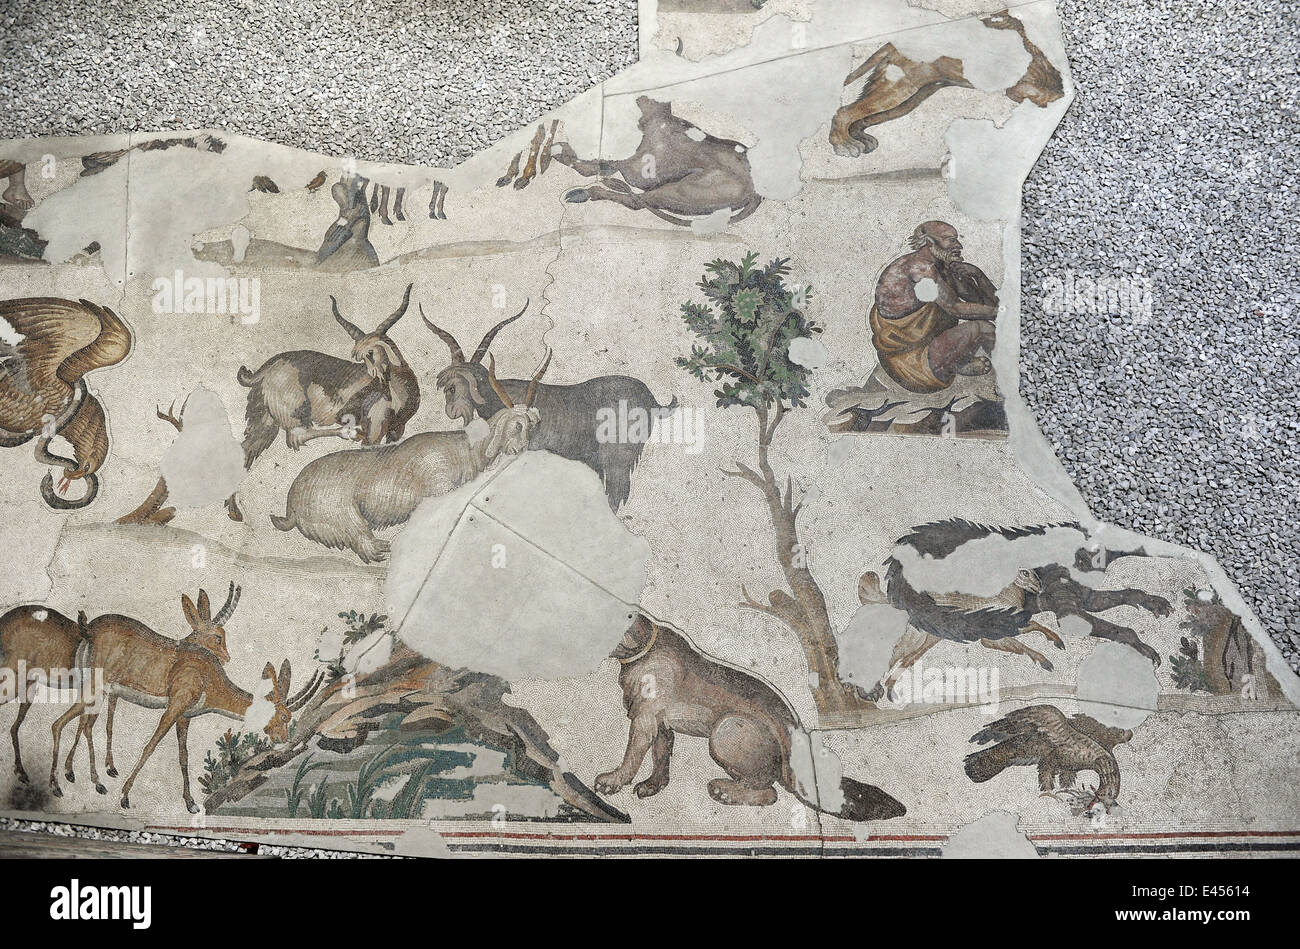 Großer Palast Mosaik-Museum. 4.-6. Jahrhunderte. Detail eines Mosaiks Darstellung einer Gruppe von Tieren. Istanbul. Turkei. Stockfoto